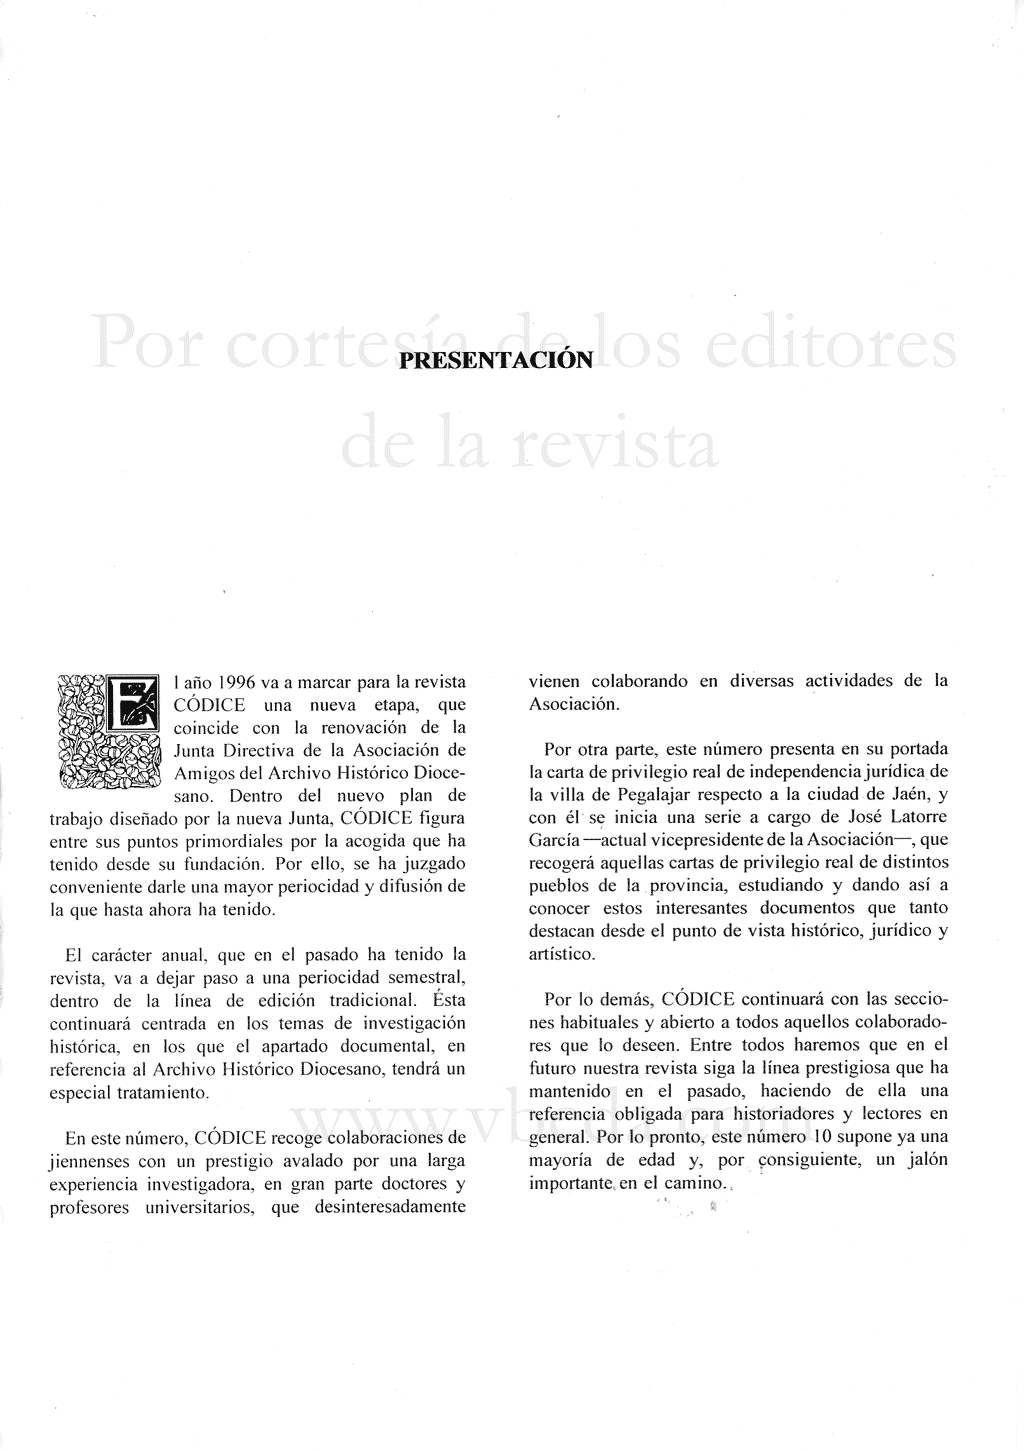 Revista Códice. Año 9. Número 10. Junio 1996